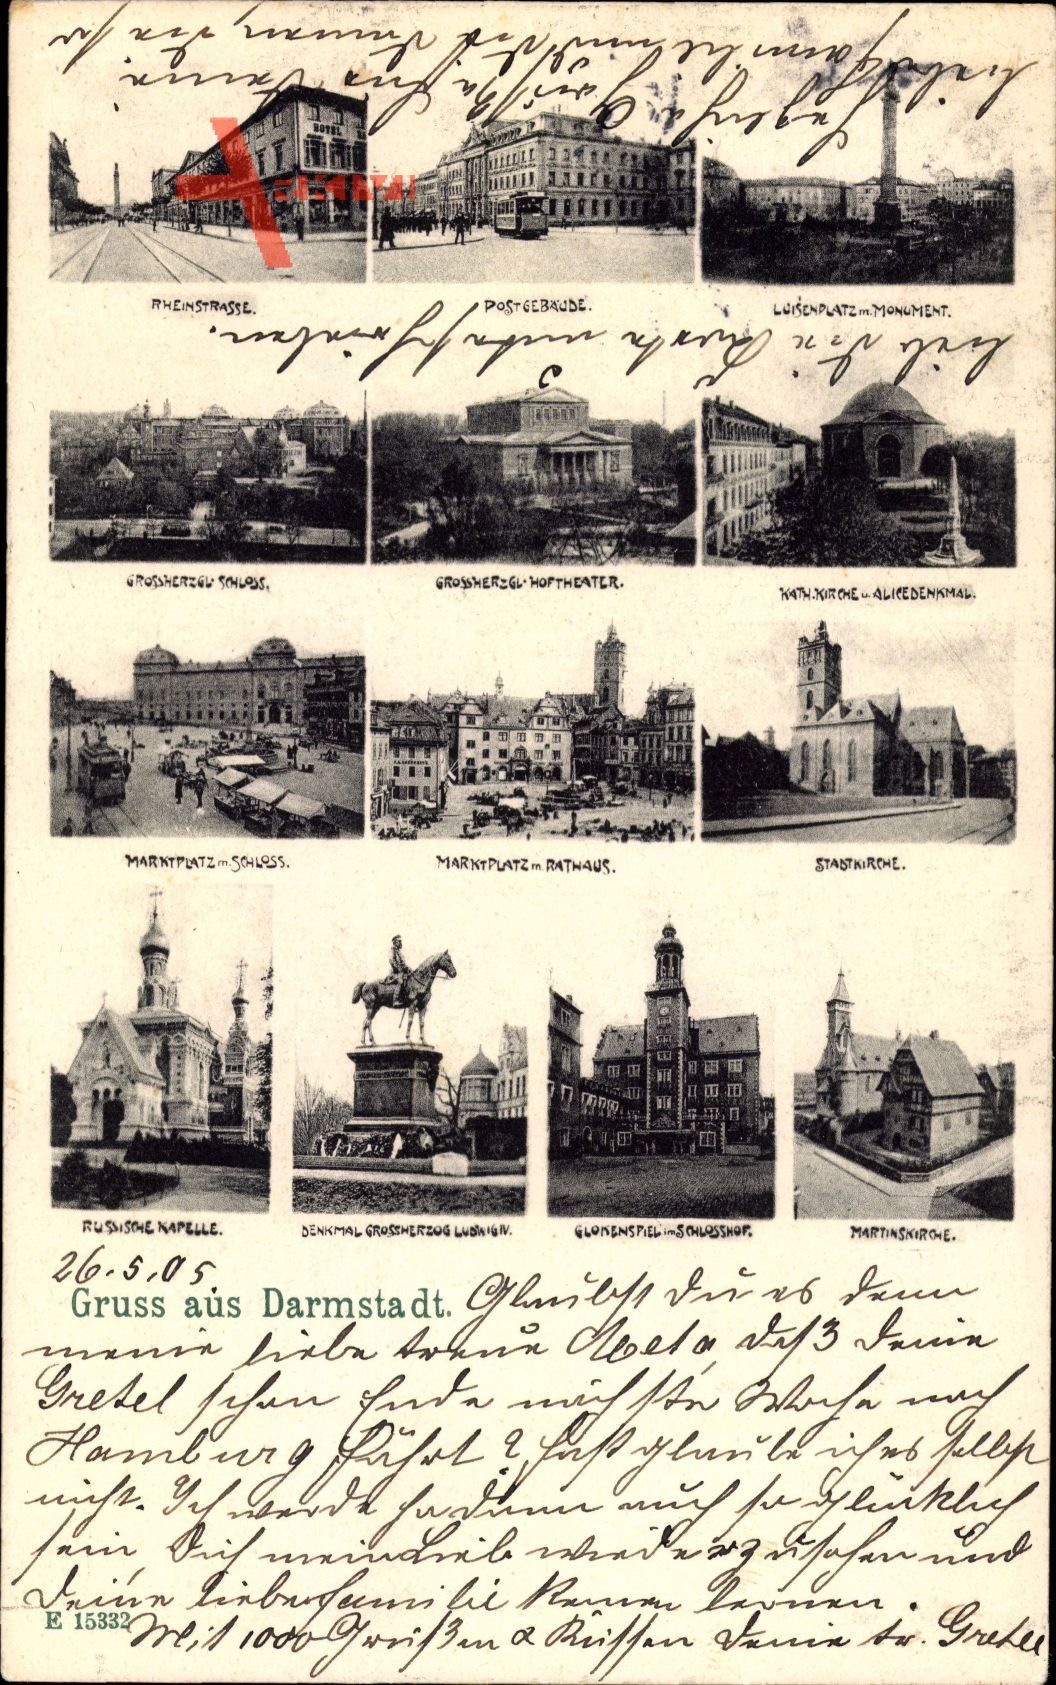 Darmstadt, Rheinstraße, Postamt, Luisenplatz, Schloss, Hoftheater, Denkmal